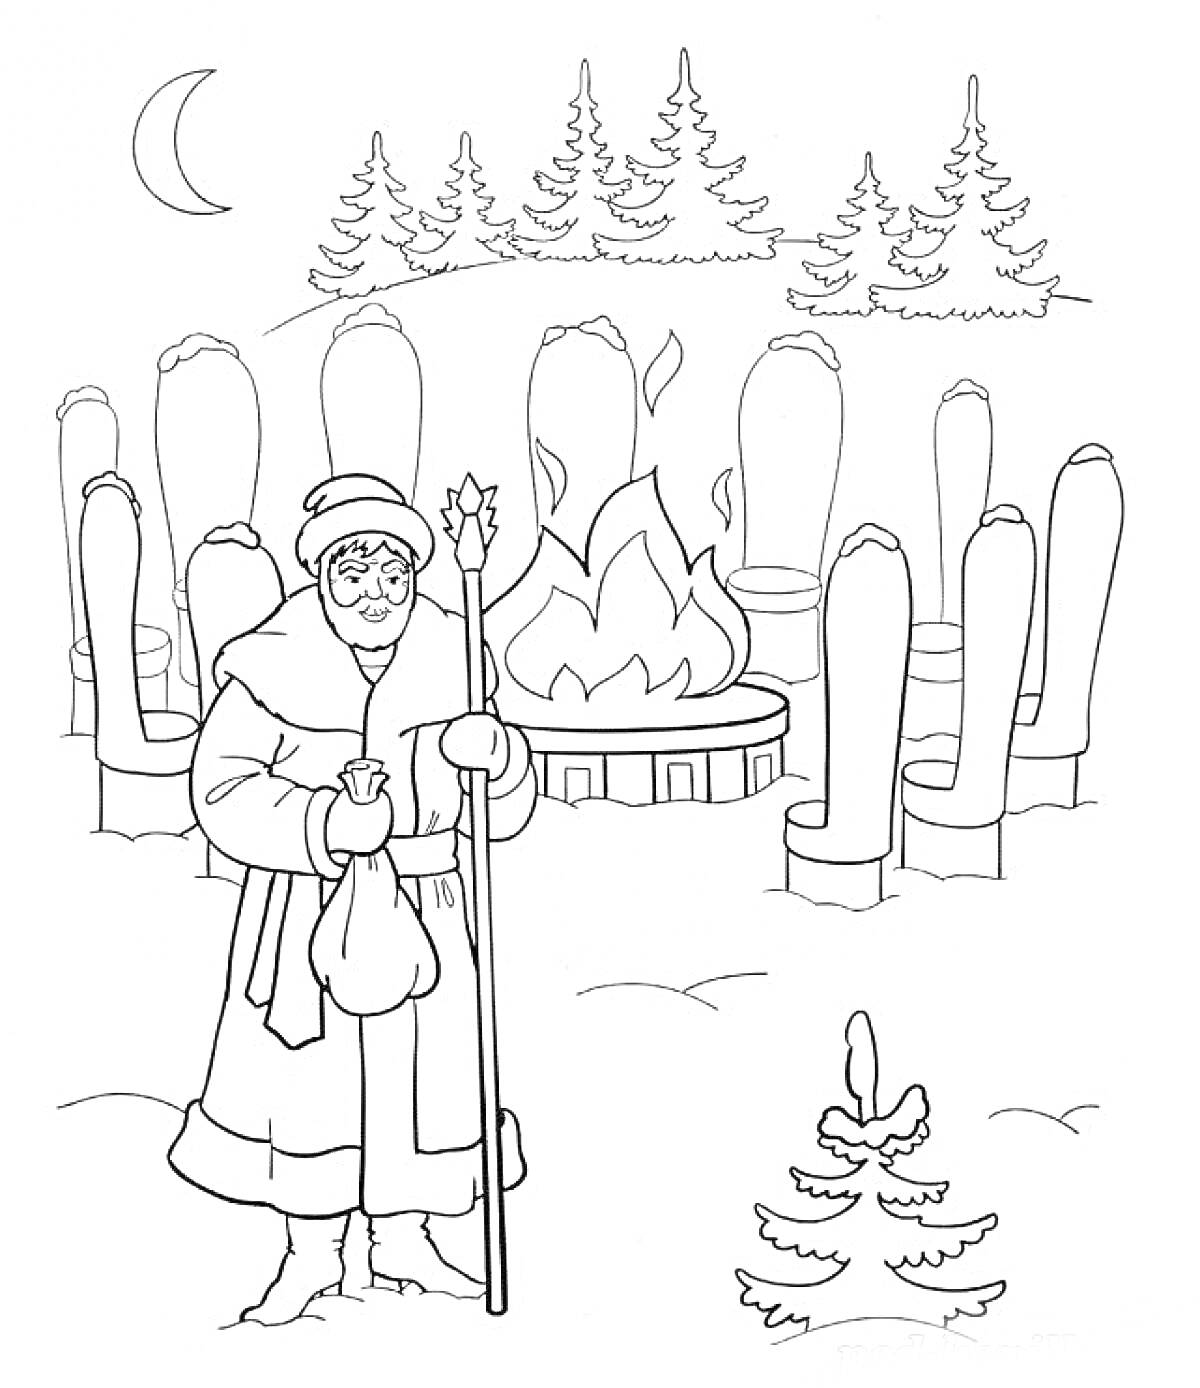 Старик с посохом и мешочком перед костром и двенадцатью стульями на том месте, где зима окружена ёлками и лесом.